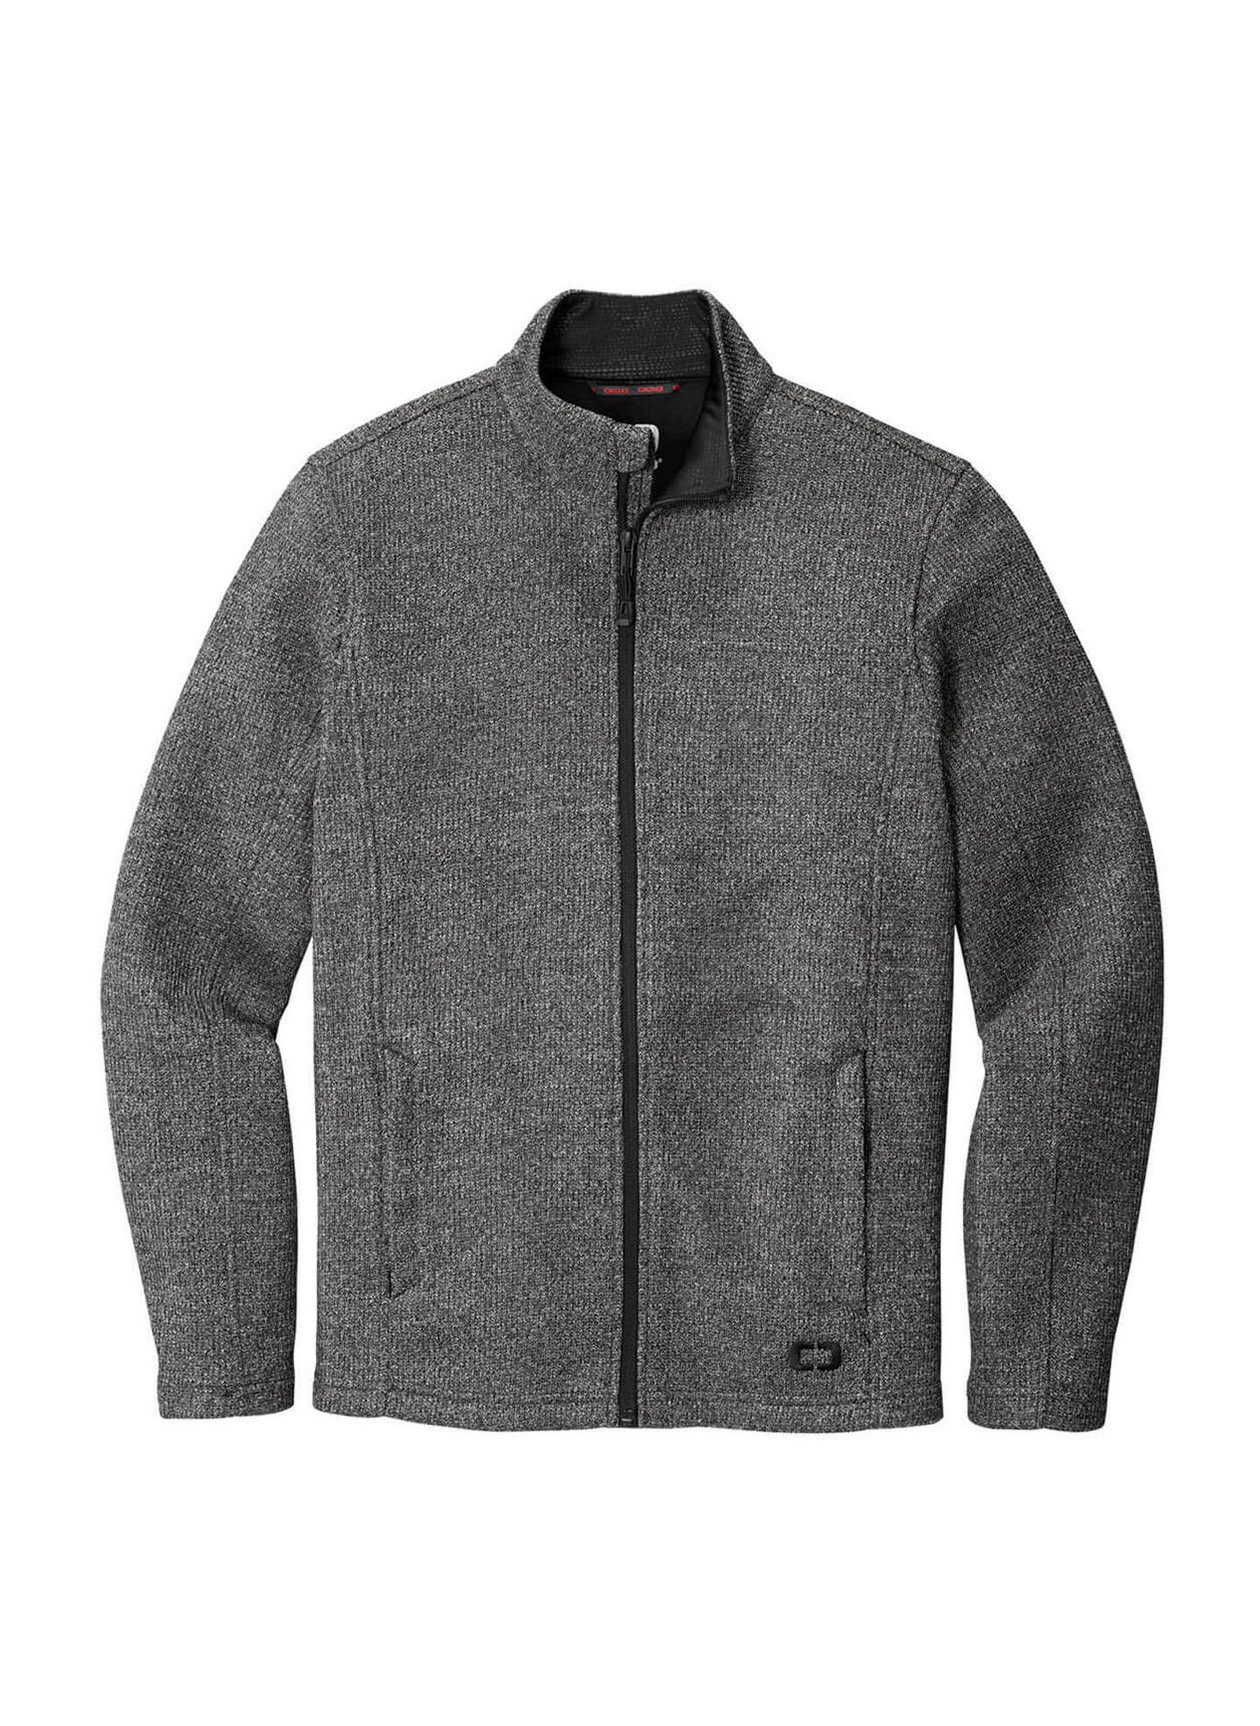 OGIO Men's Diesel Grey Heather Grit Fleece Jacket